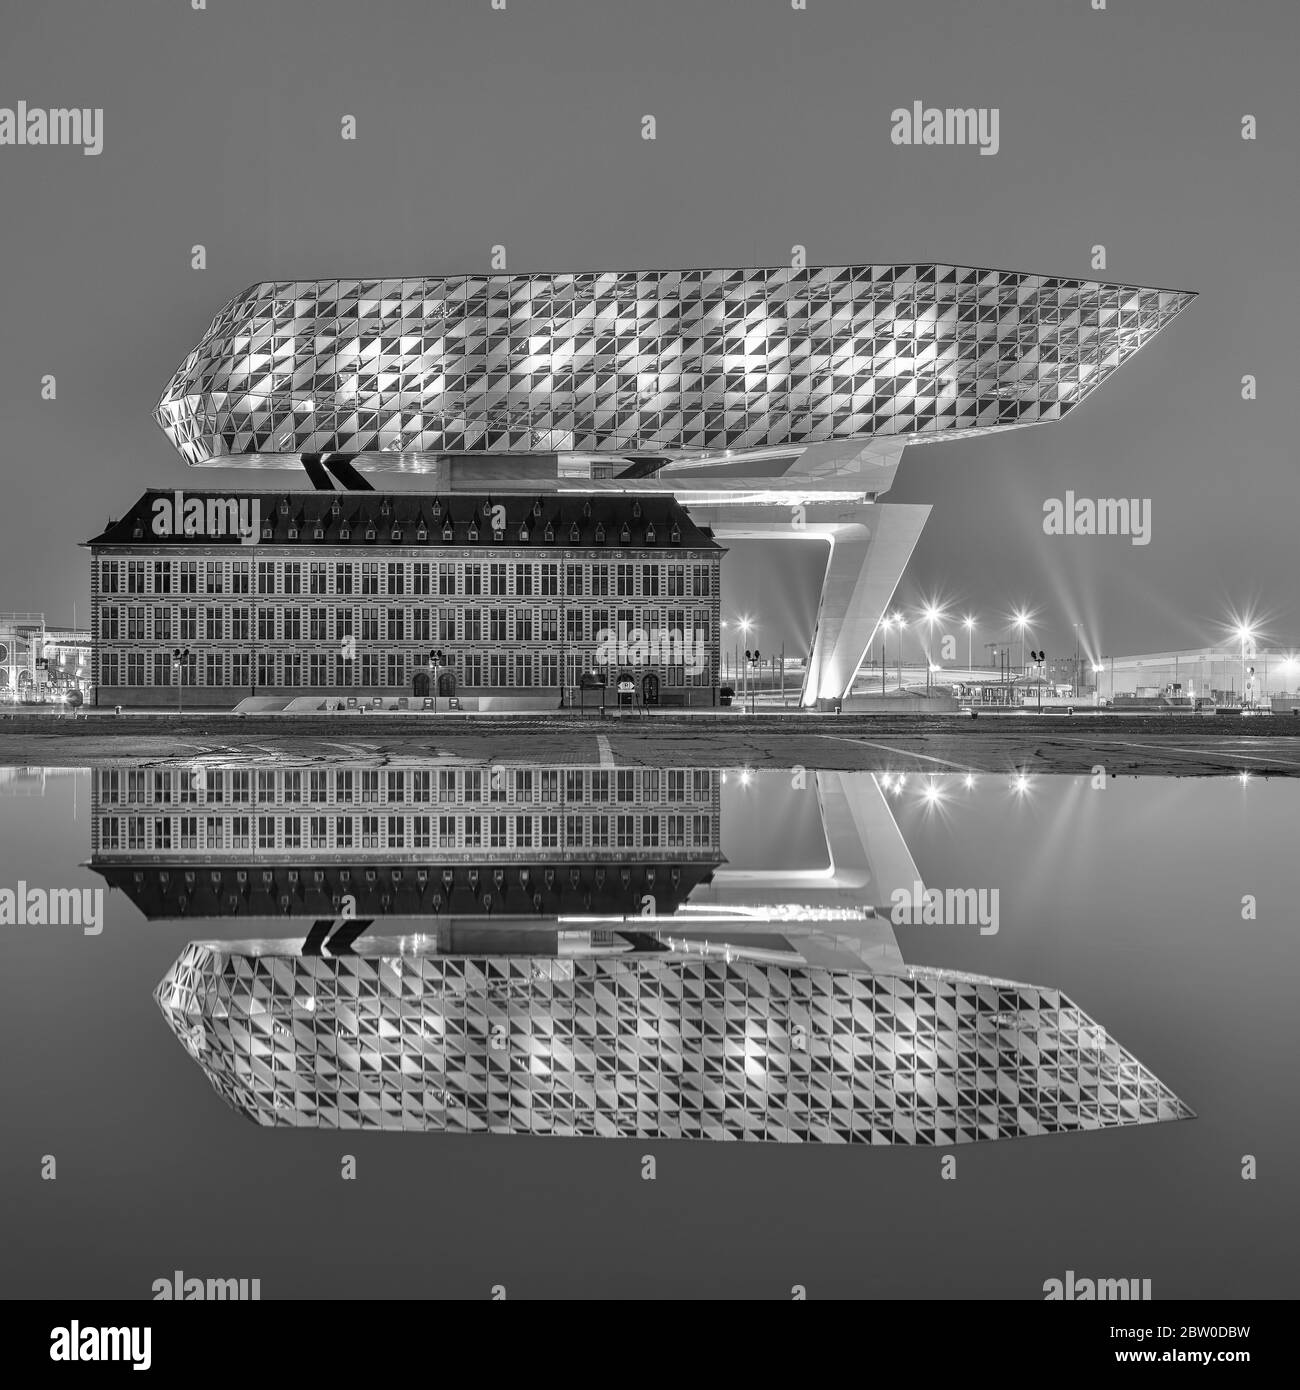 Port House la nuit se reflète dans un étang. Zaha Hadid Architects a ajouté une extension en verre à une caserne de pompiers rénovée. Banque D'Images